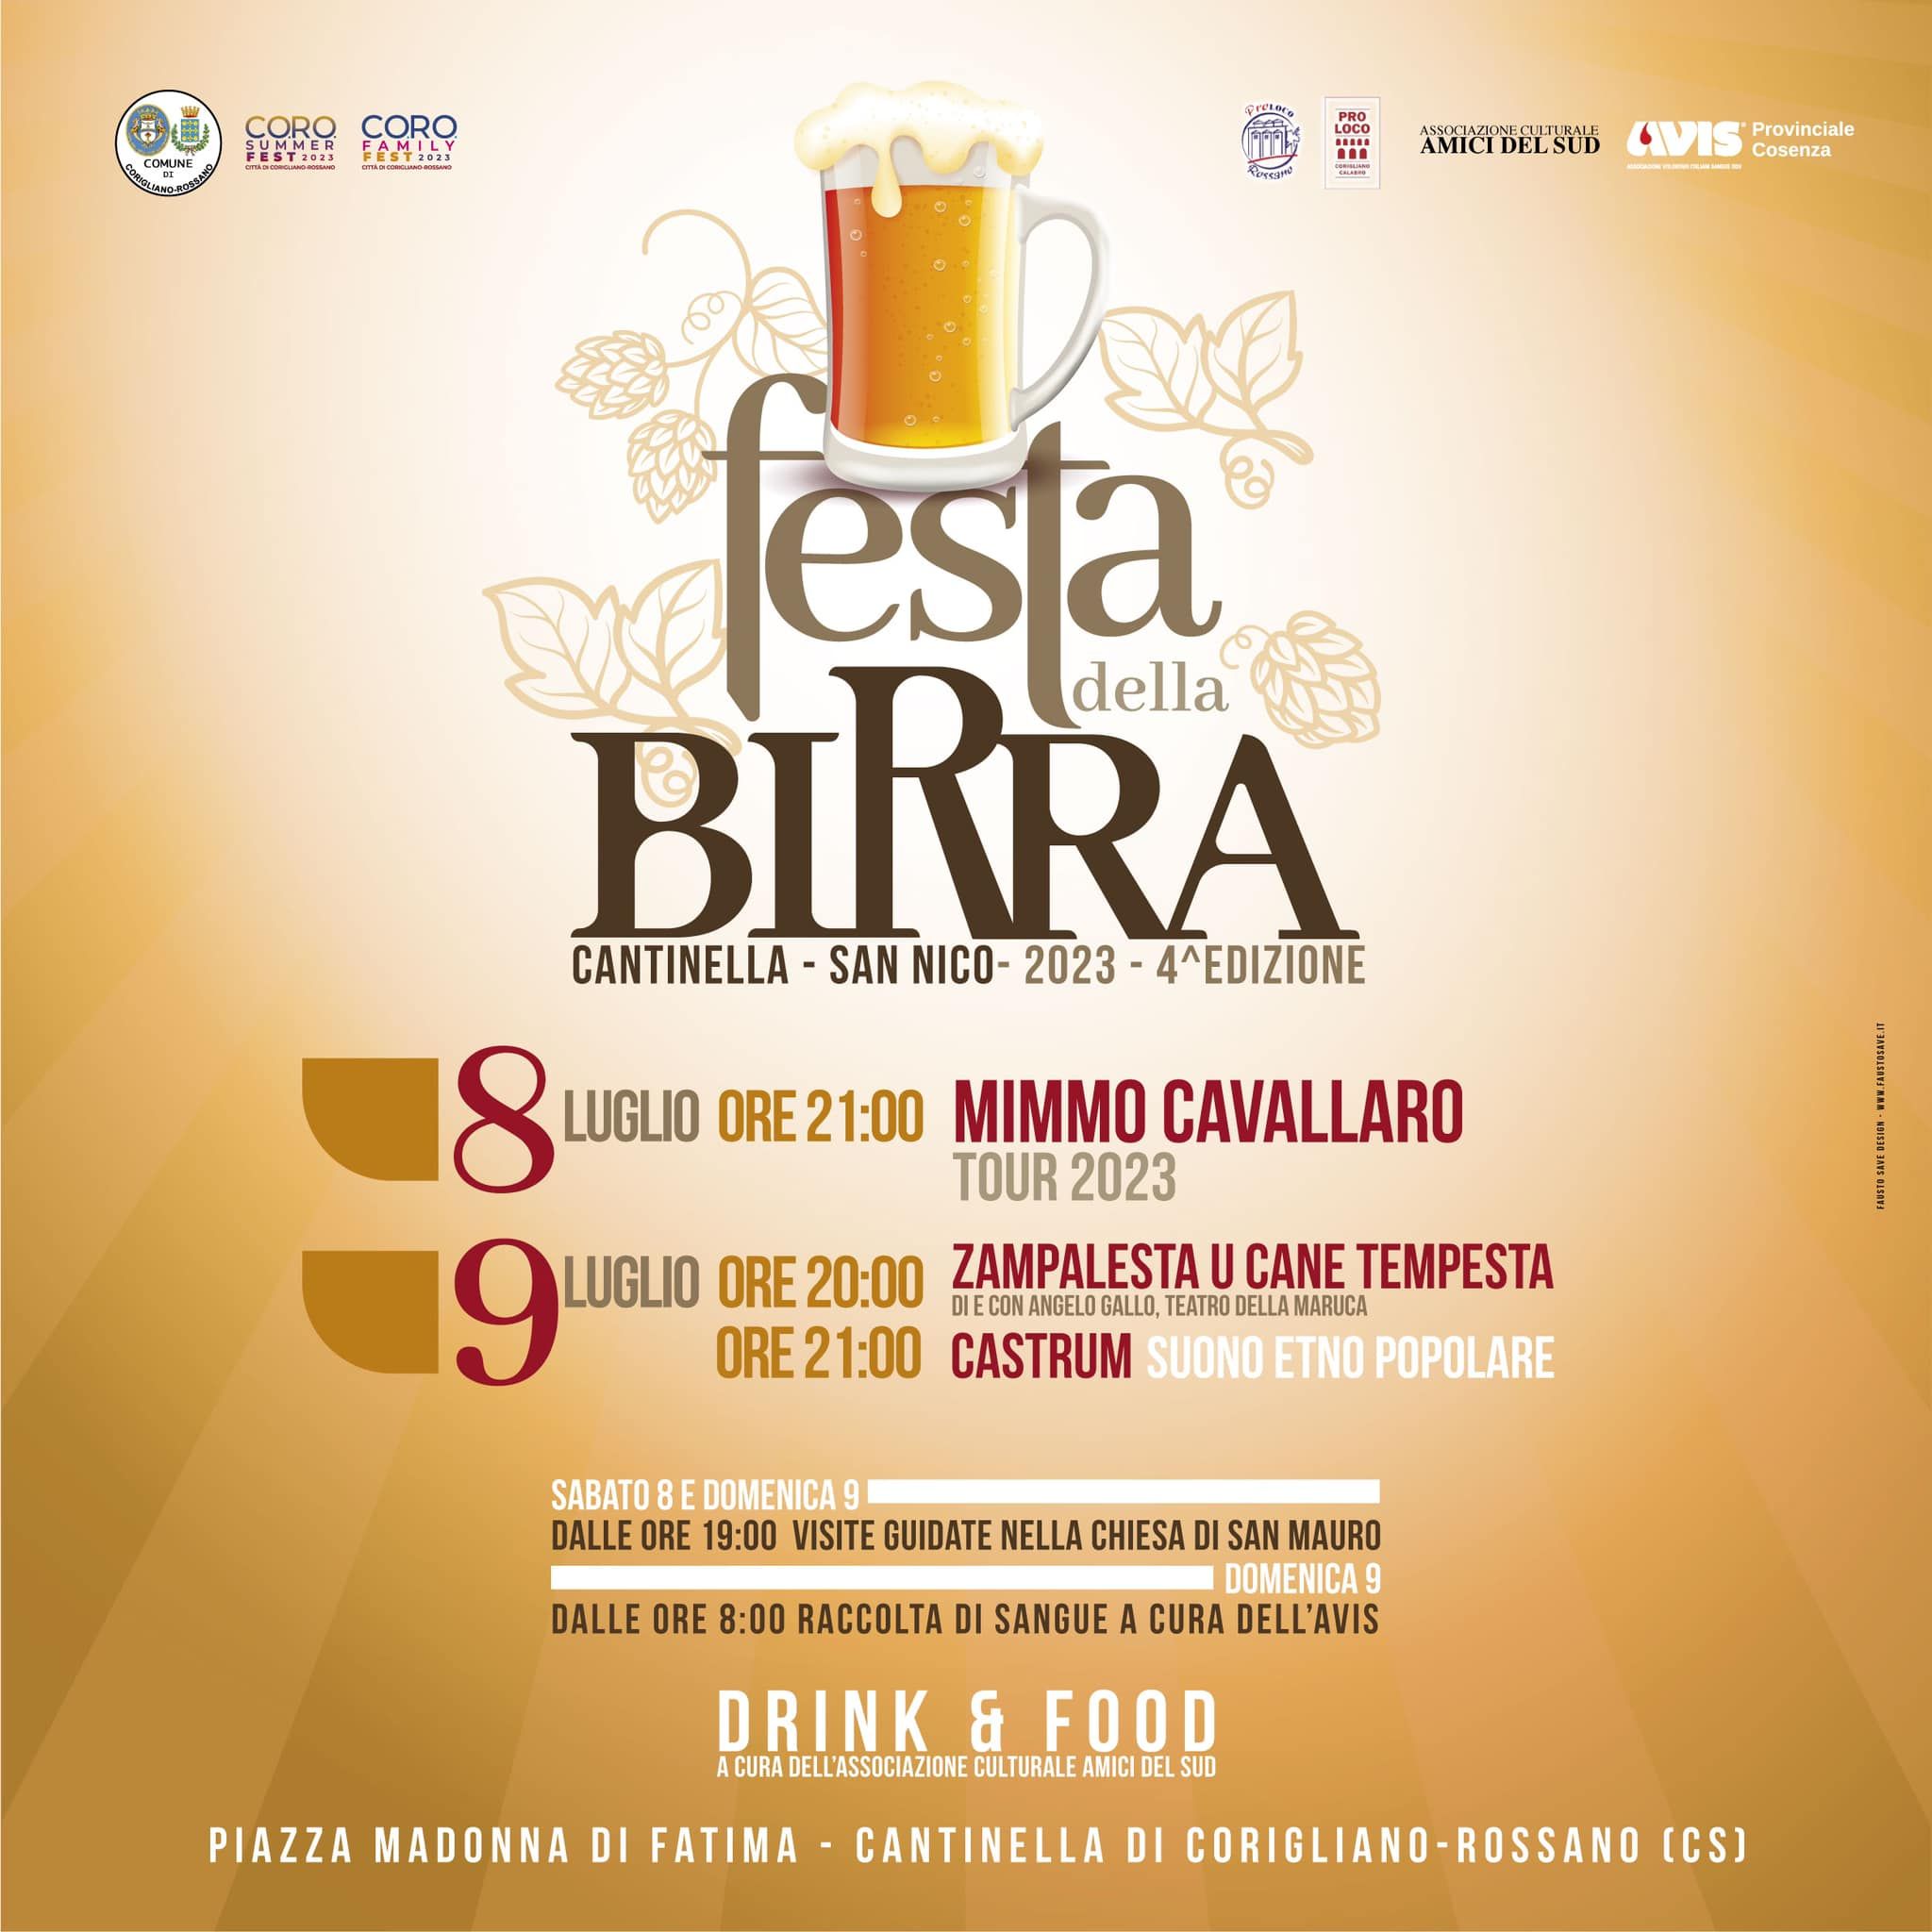 Festa della Birra 2023 - Cantinella, San Nico